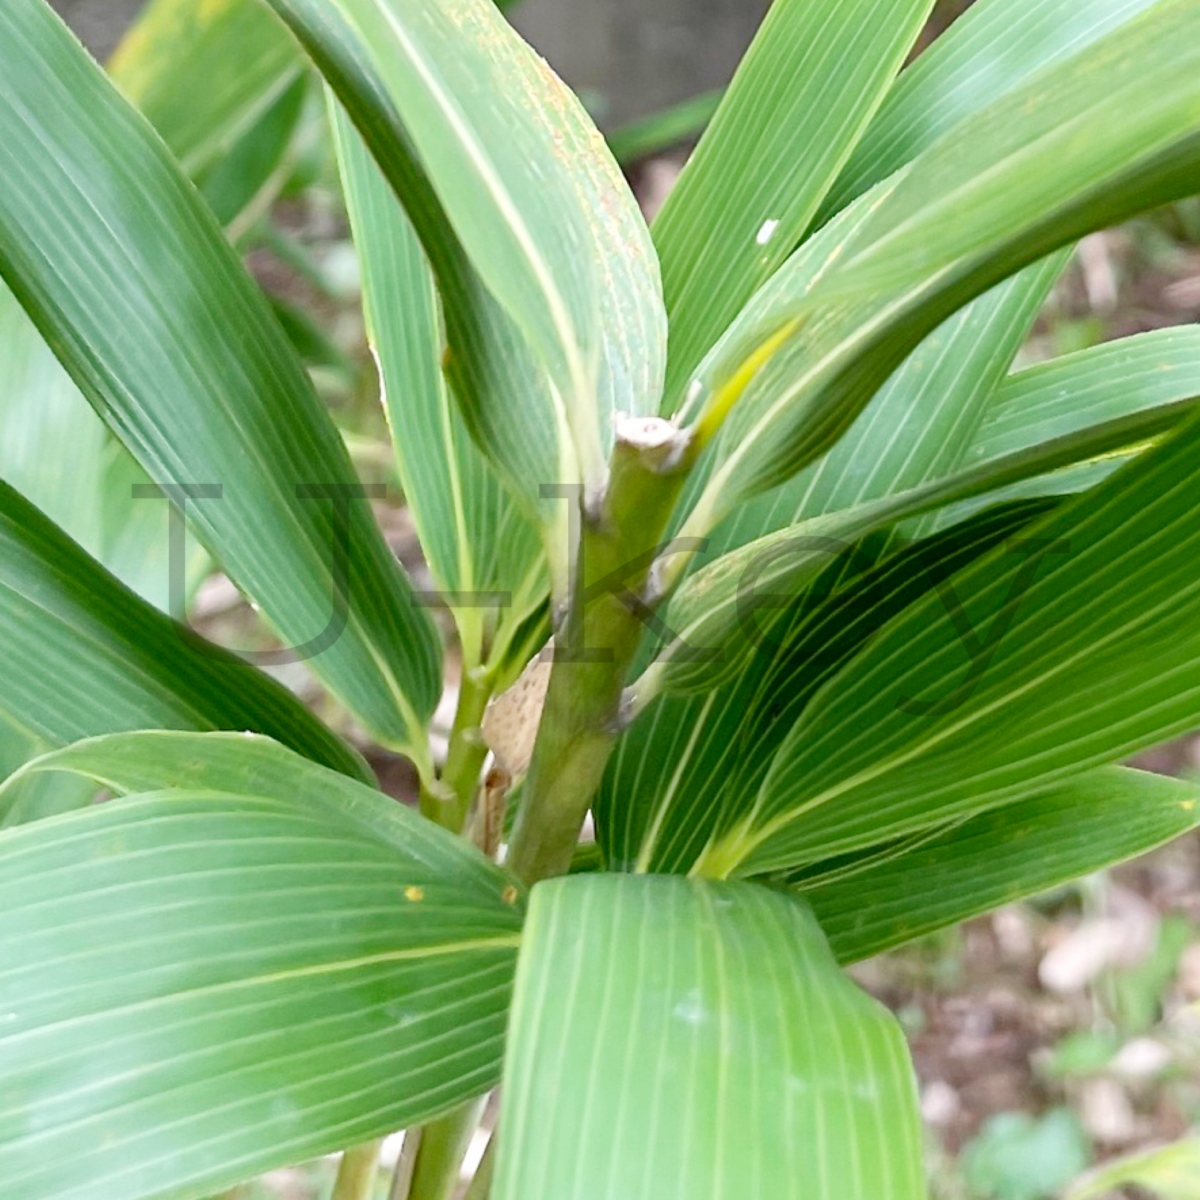 Nemagari-Bamboo,Sasa kurilensis